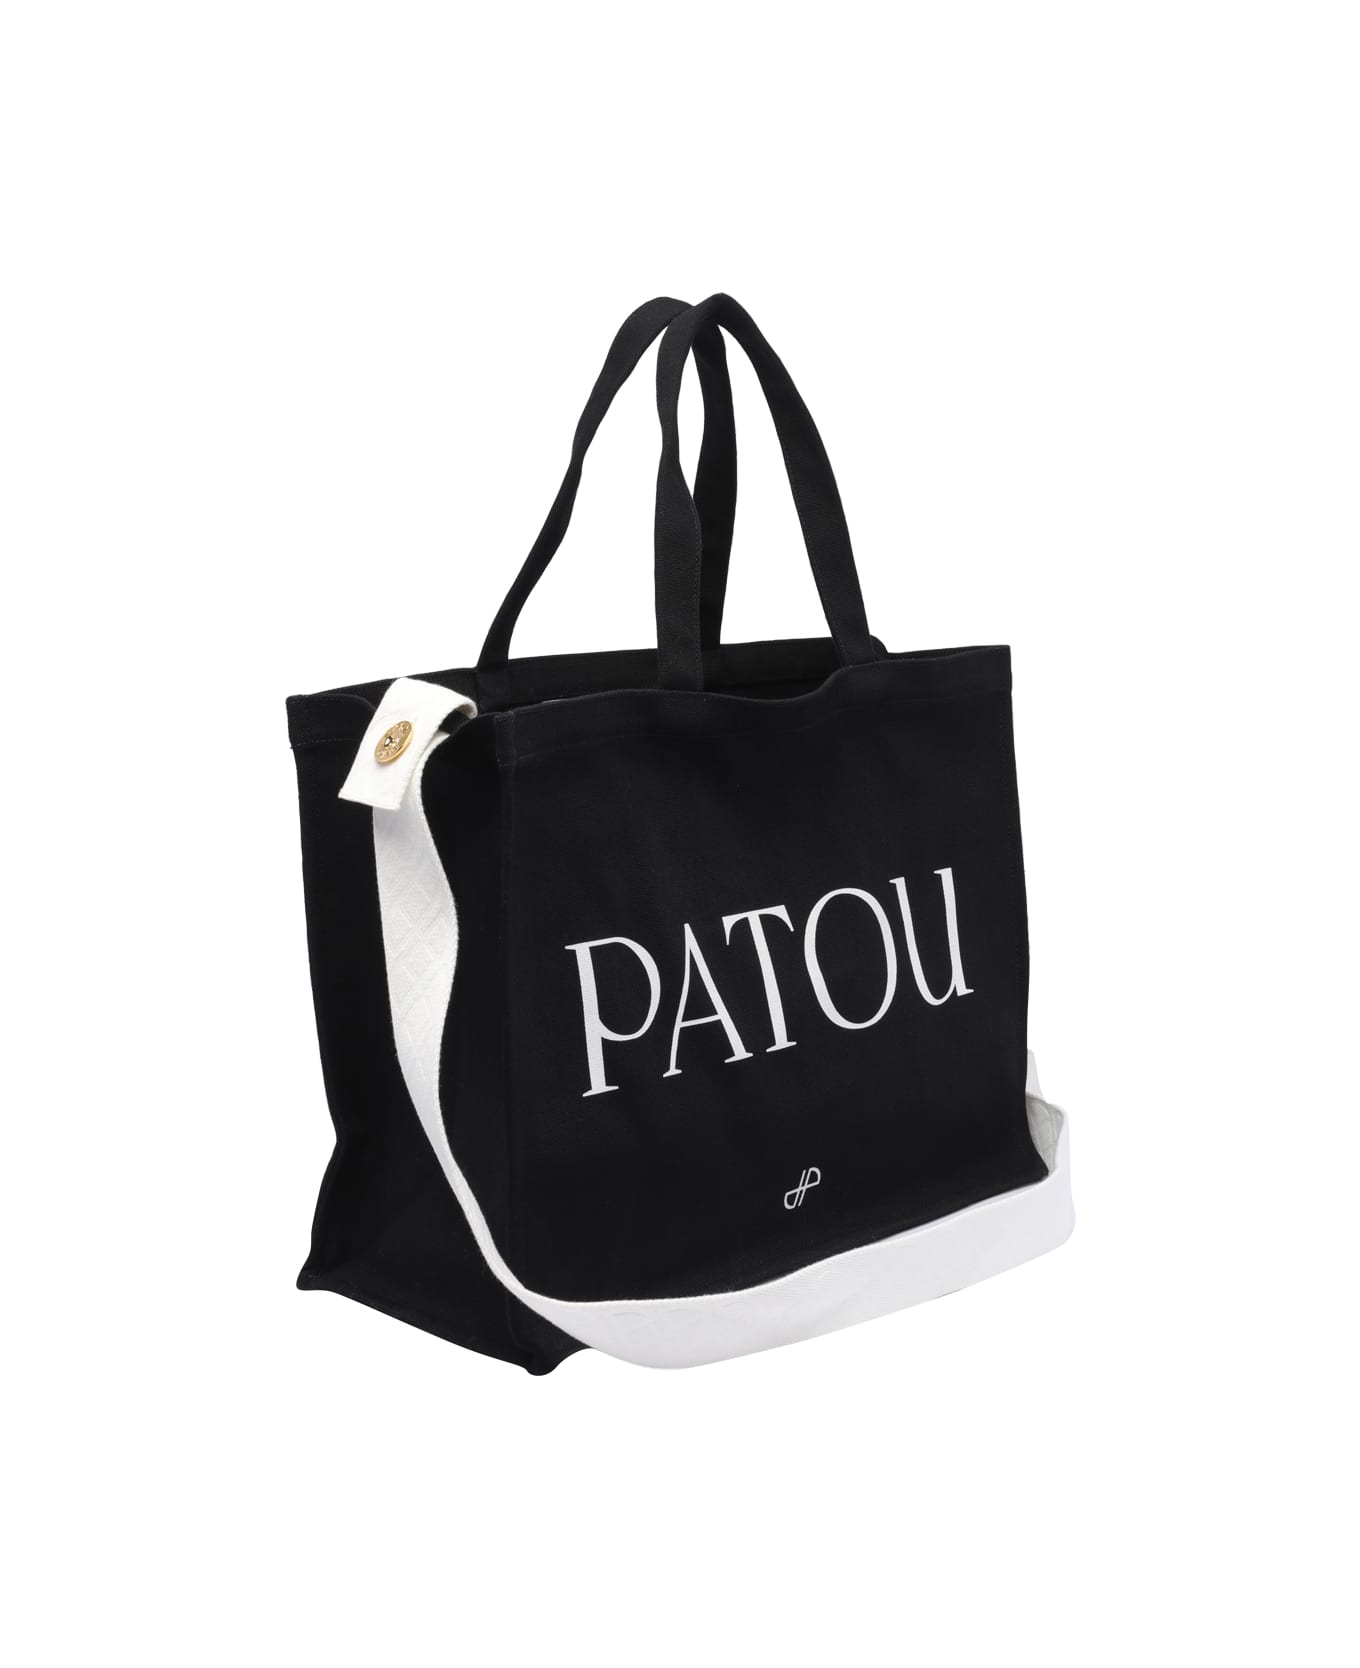 Patou Large Logo Tote Bag - Nero トートバッグ